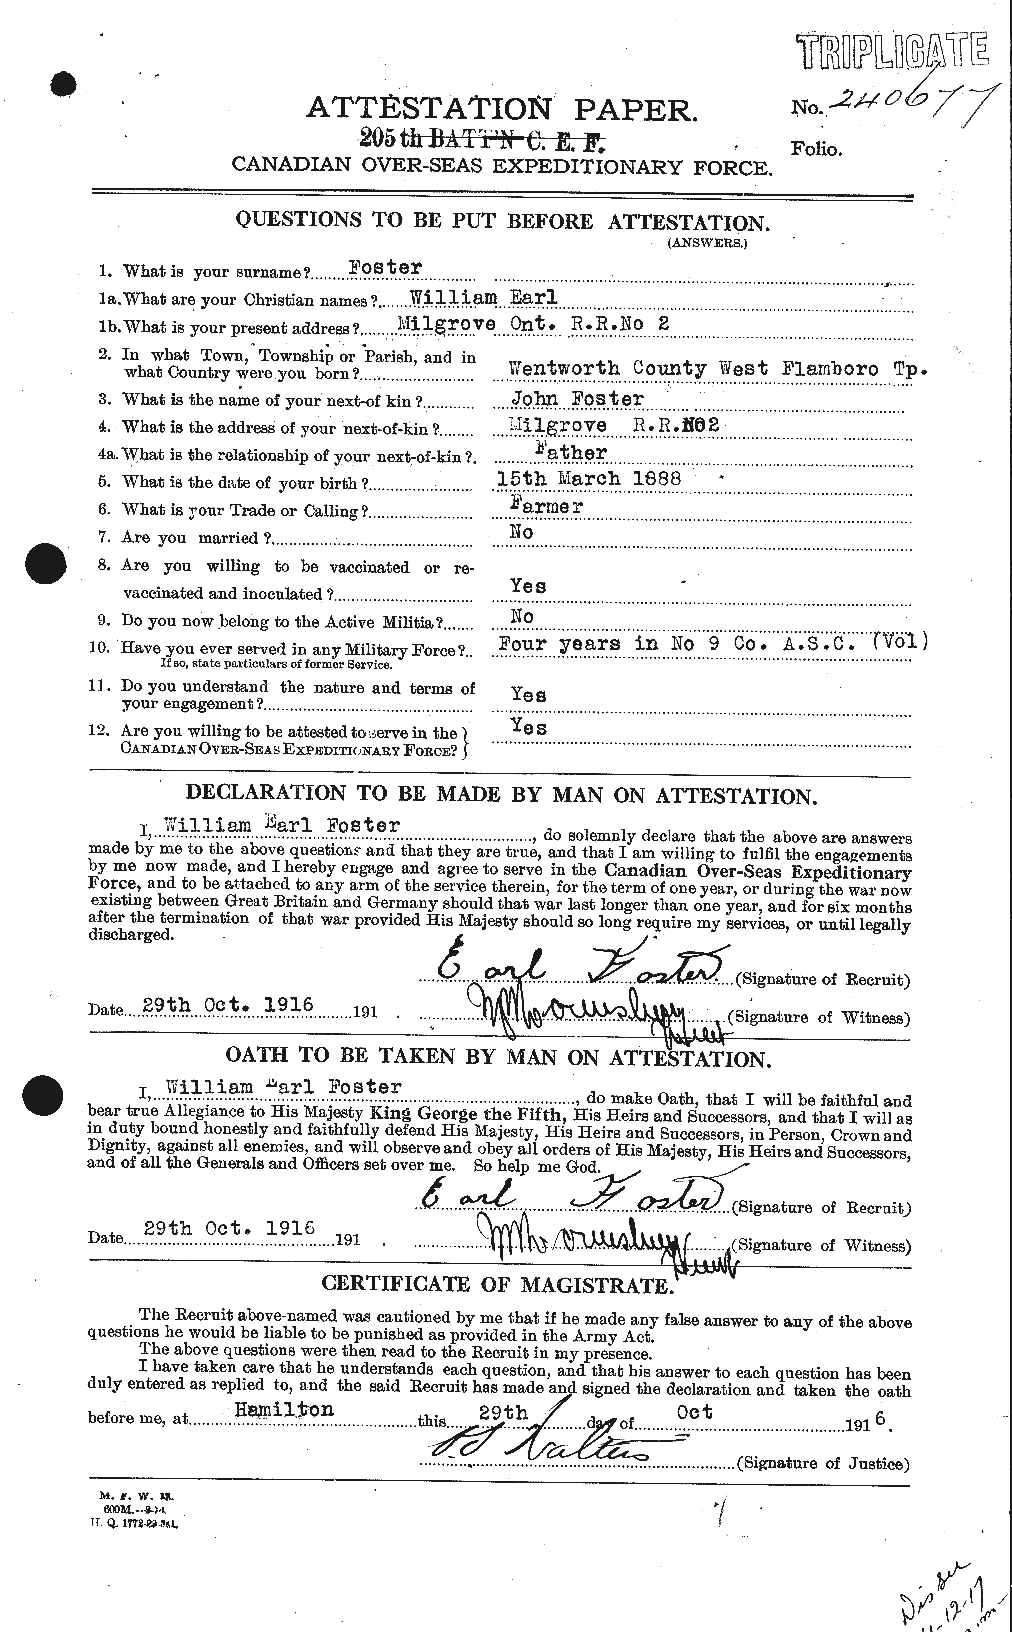 Dossiers du Personnel de la Première Guerre mondiale - CEC 328736a